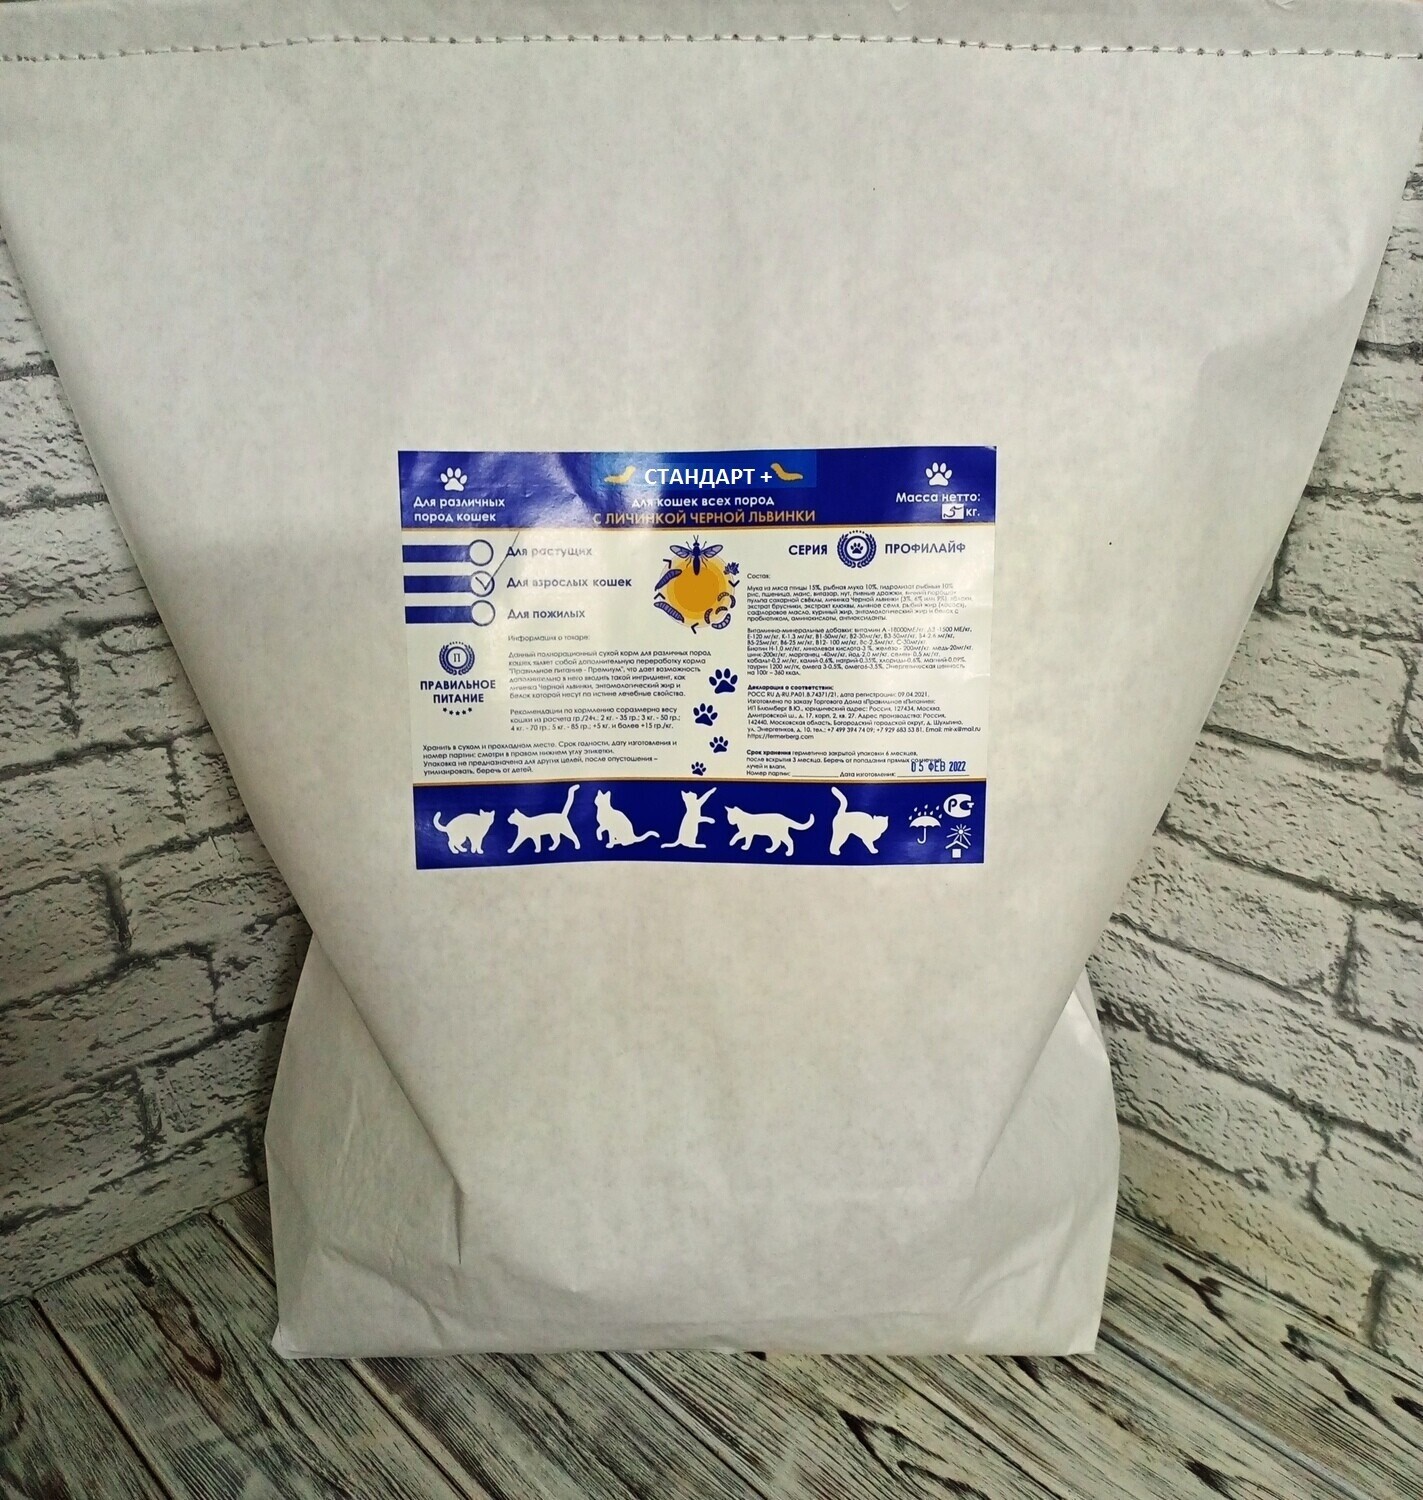 Сухой корм для кошек - "Стандарт +",  стоимость за упаковку 5 кг.